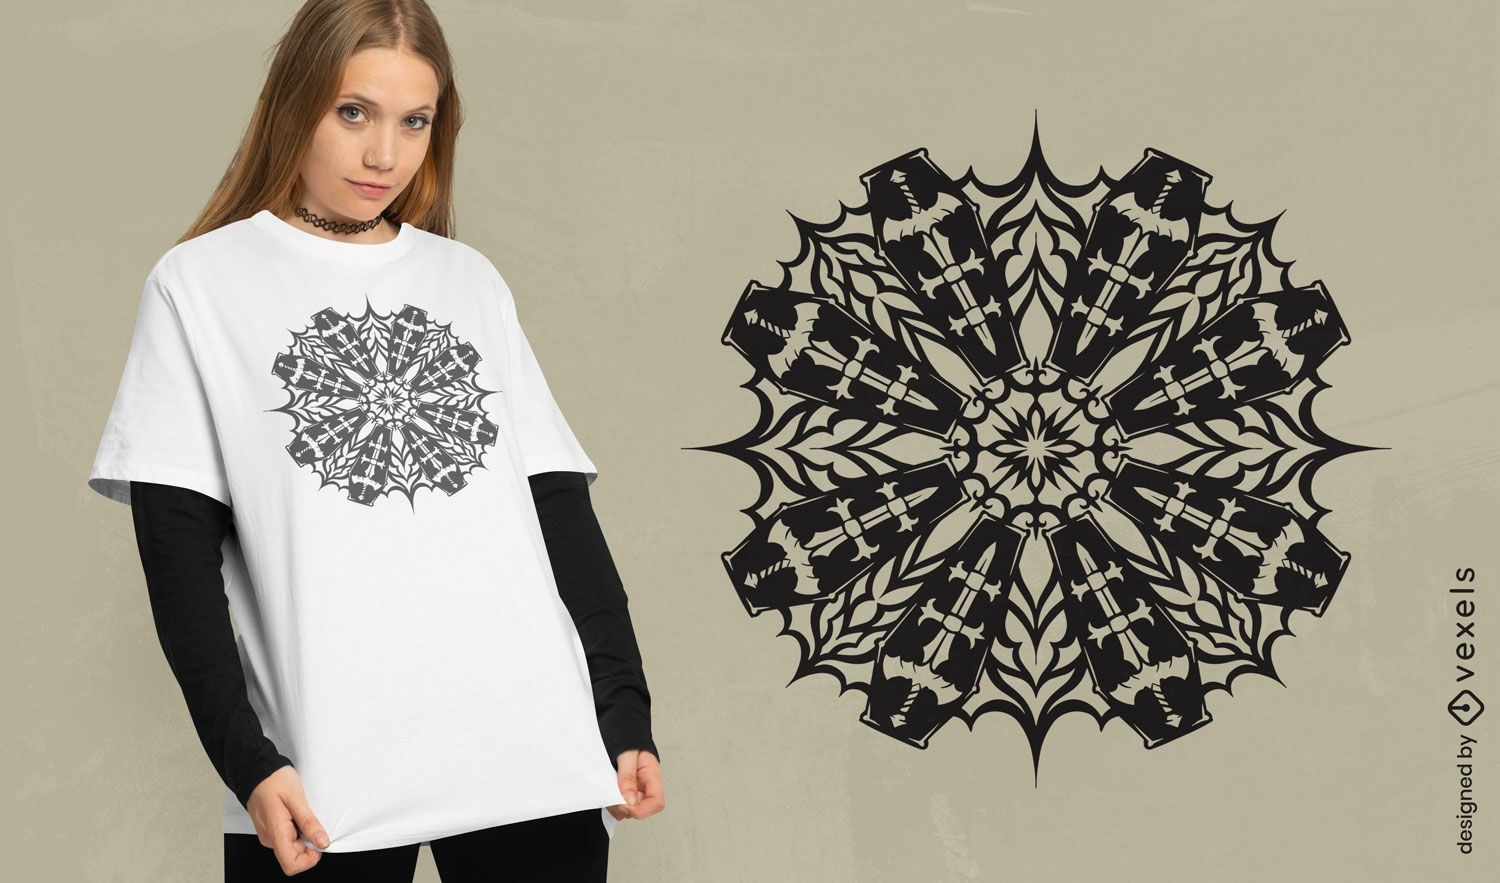 Gotisches T-Shirt-Design mit S?rgen und Schneeflockenmuster